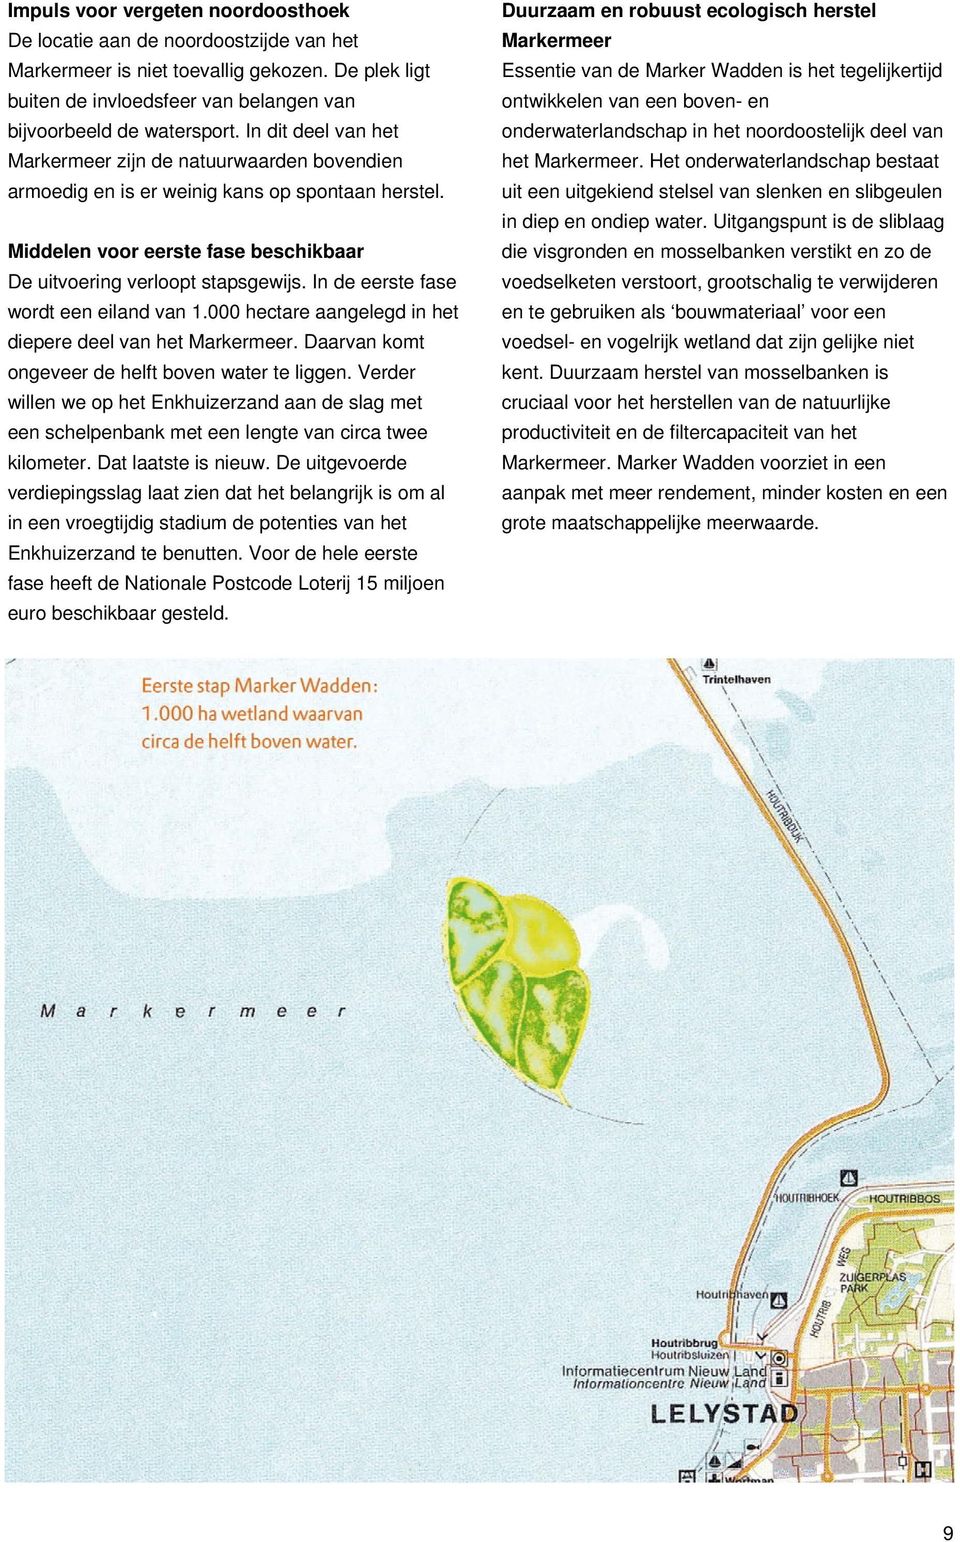 In de eerste fase wordt een eiland van 1.000 hectare aangelegd in het diepere deel van het Markermeer. Daarvan komt ongeveer de helft boven water te liggen.